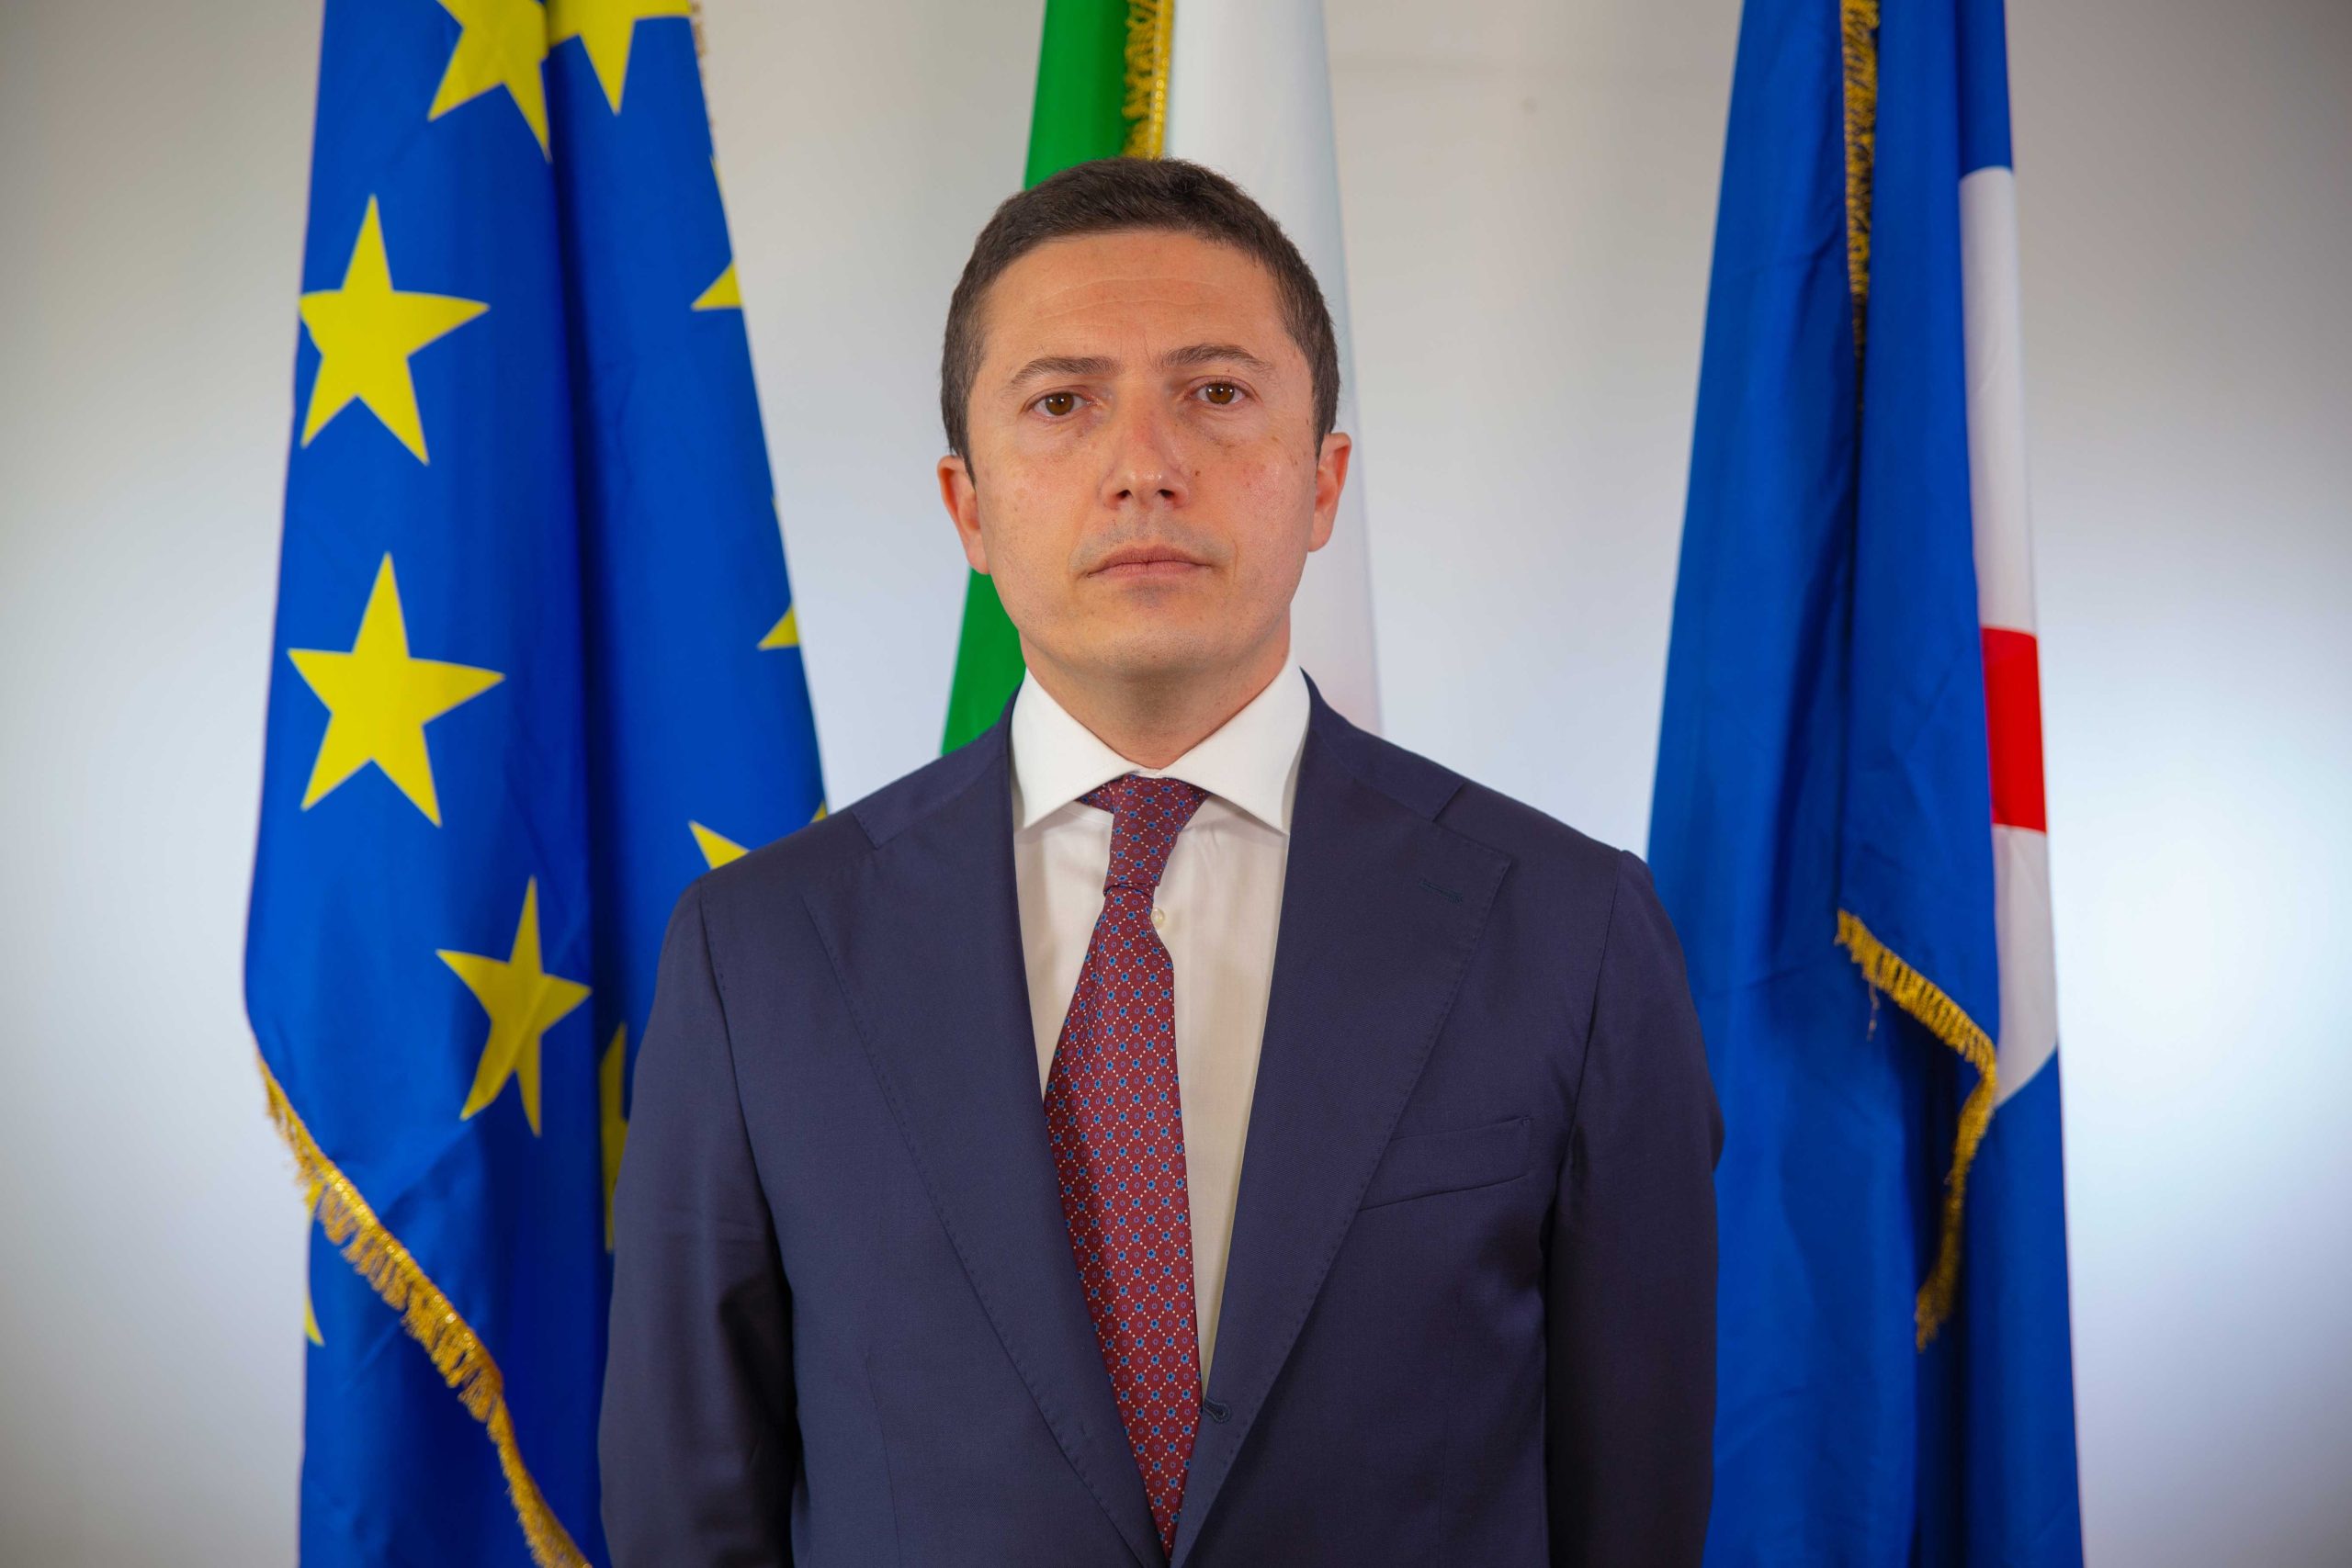 Regione Campania: nuova classificazione strutture alberghiere, Presidente Mensorio “Elevare standard qualitativi per attrarre turismo”